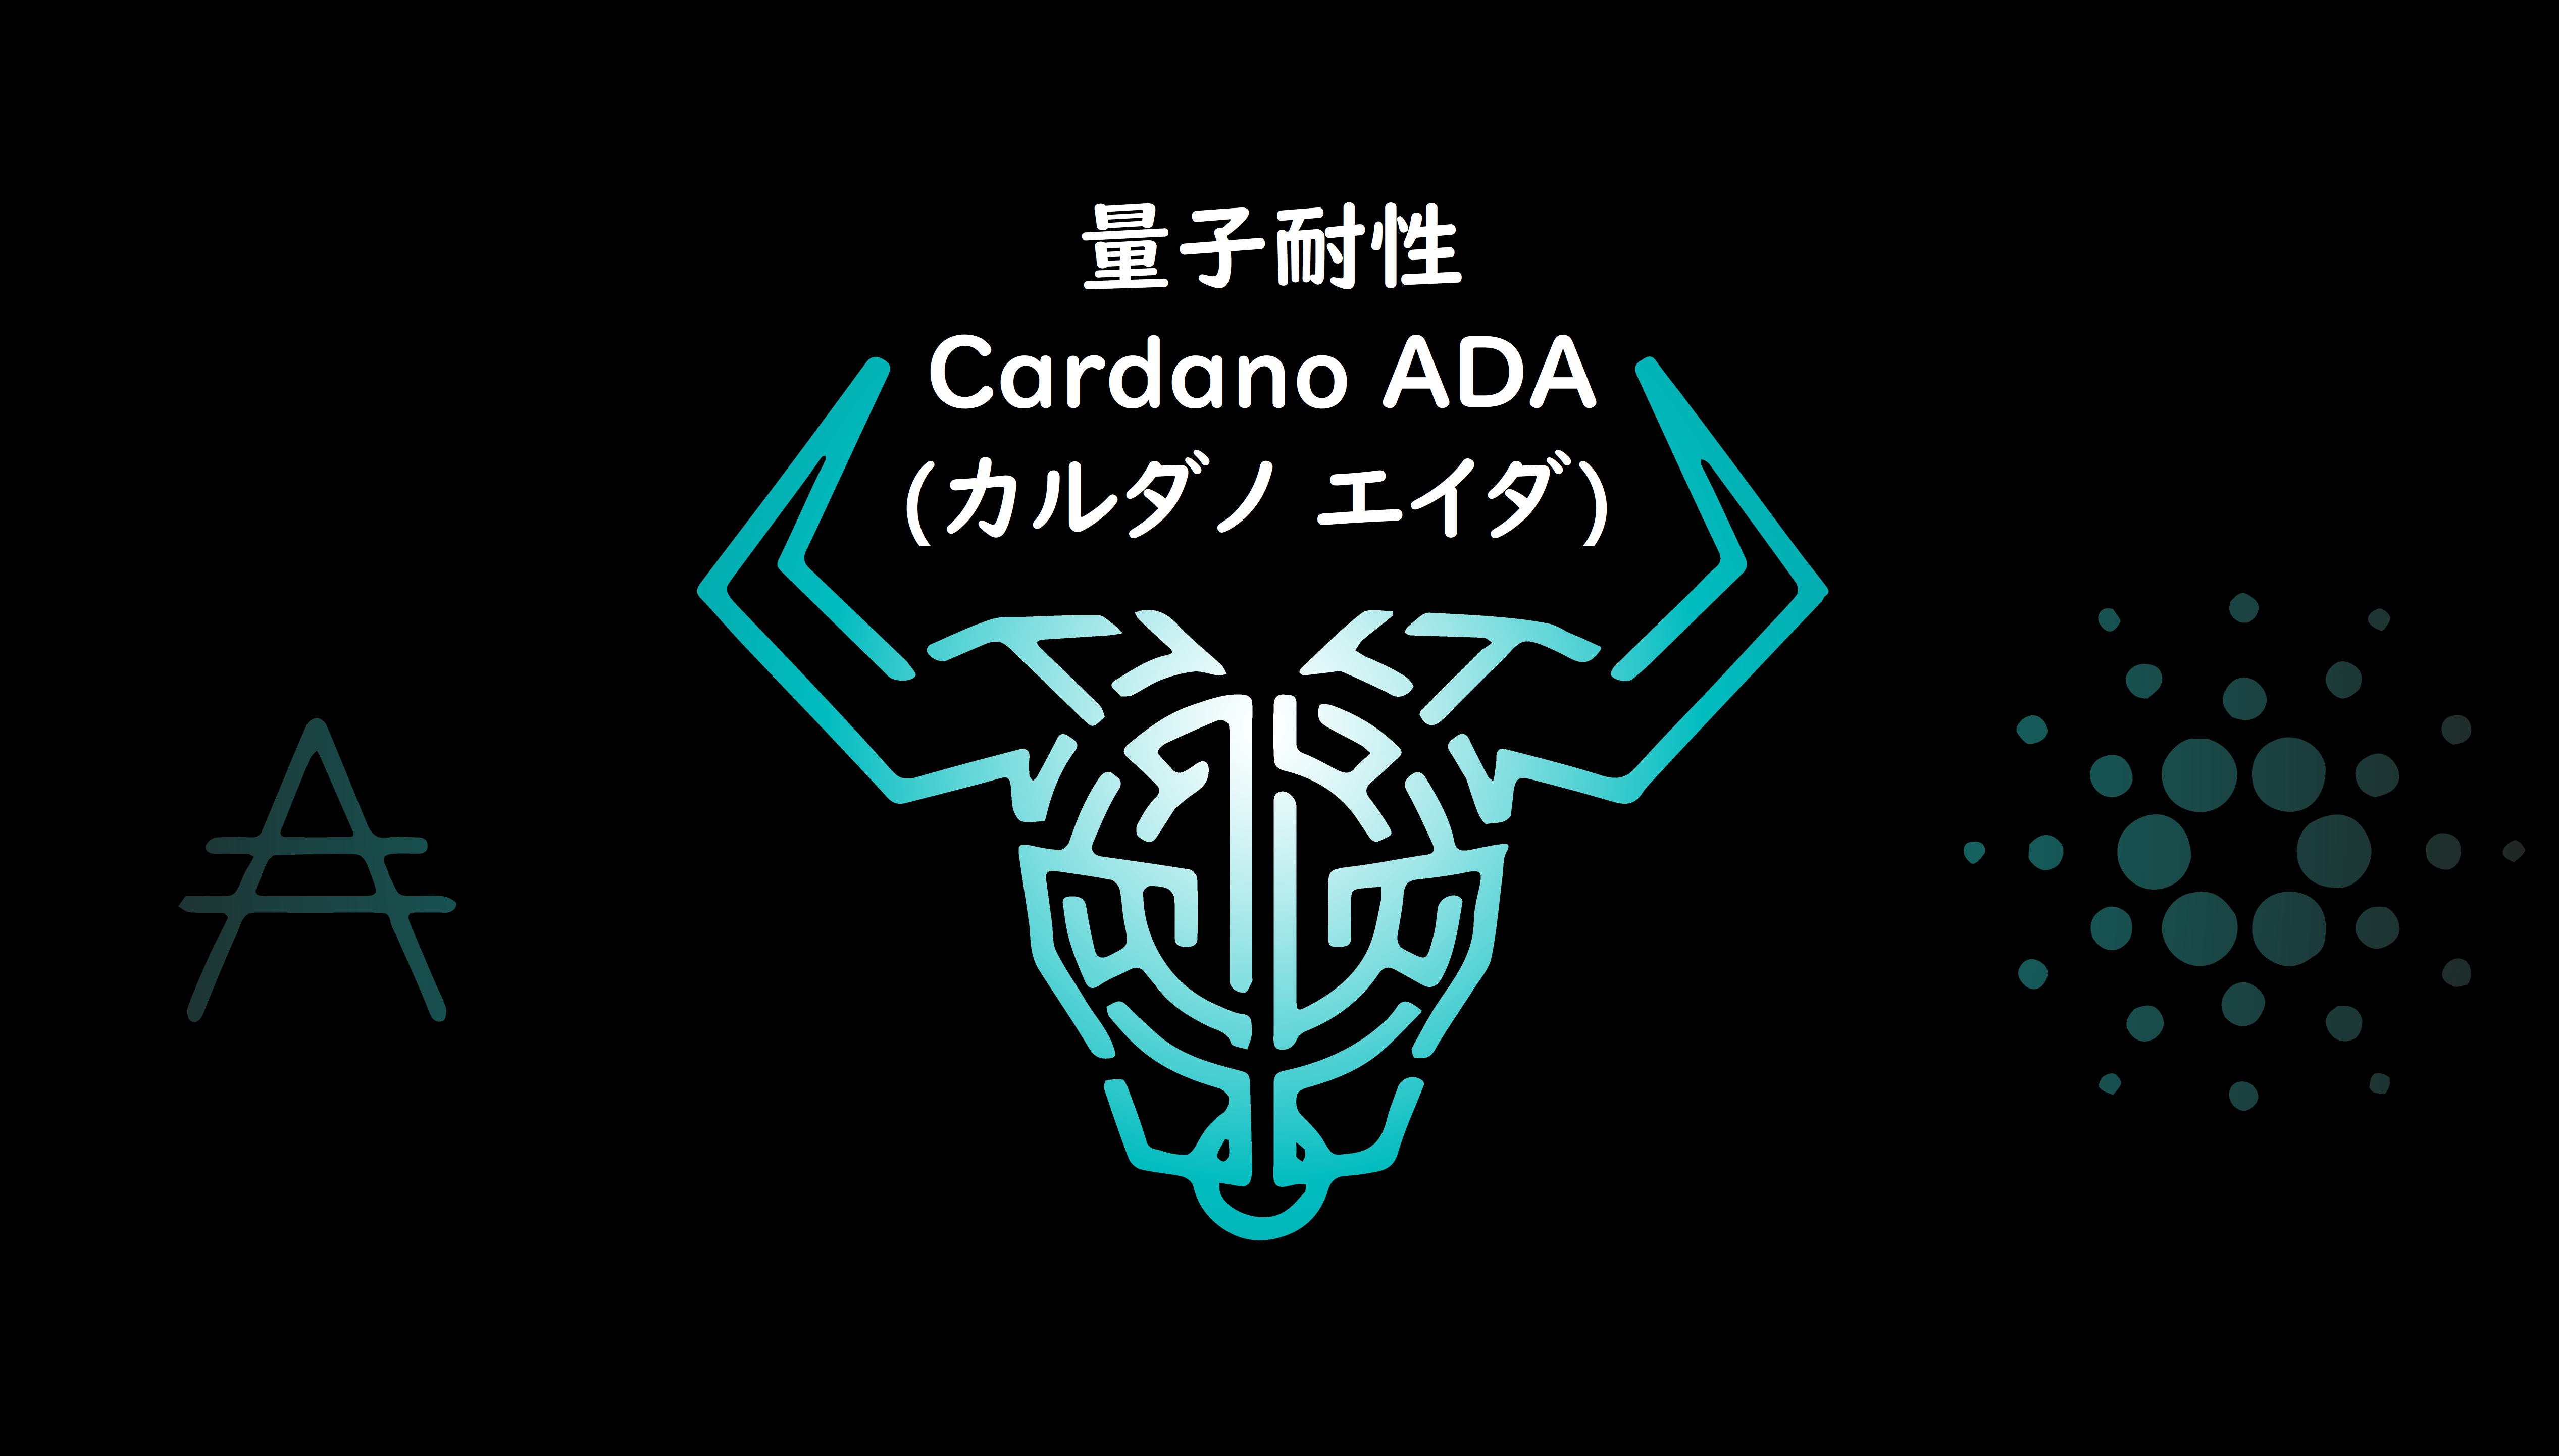 量子コンピューターの脅威と耐性 Cardano ADA(カルダノ エイダ)